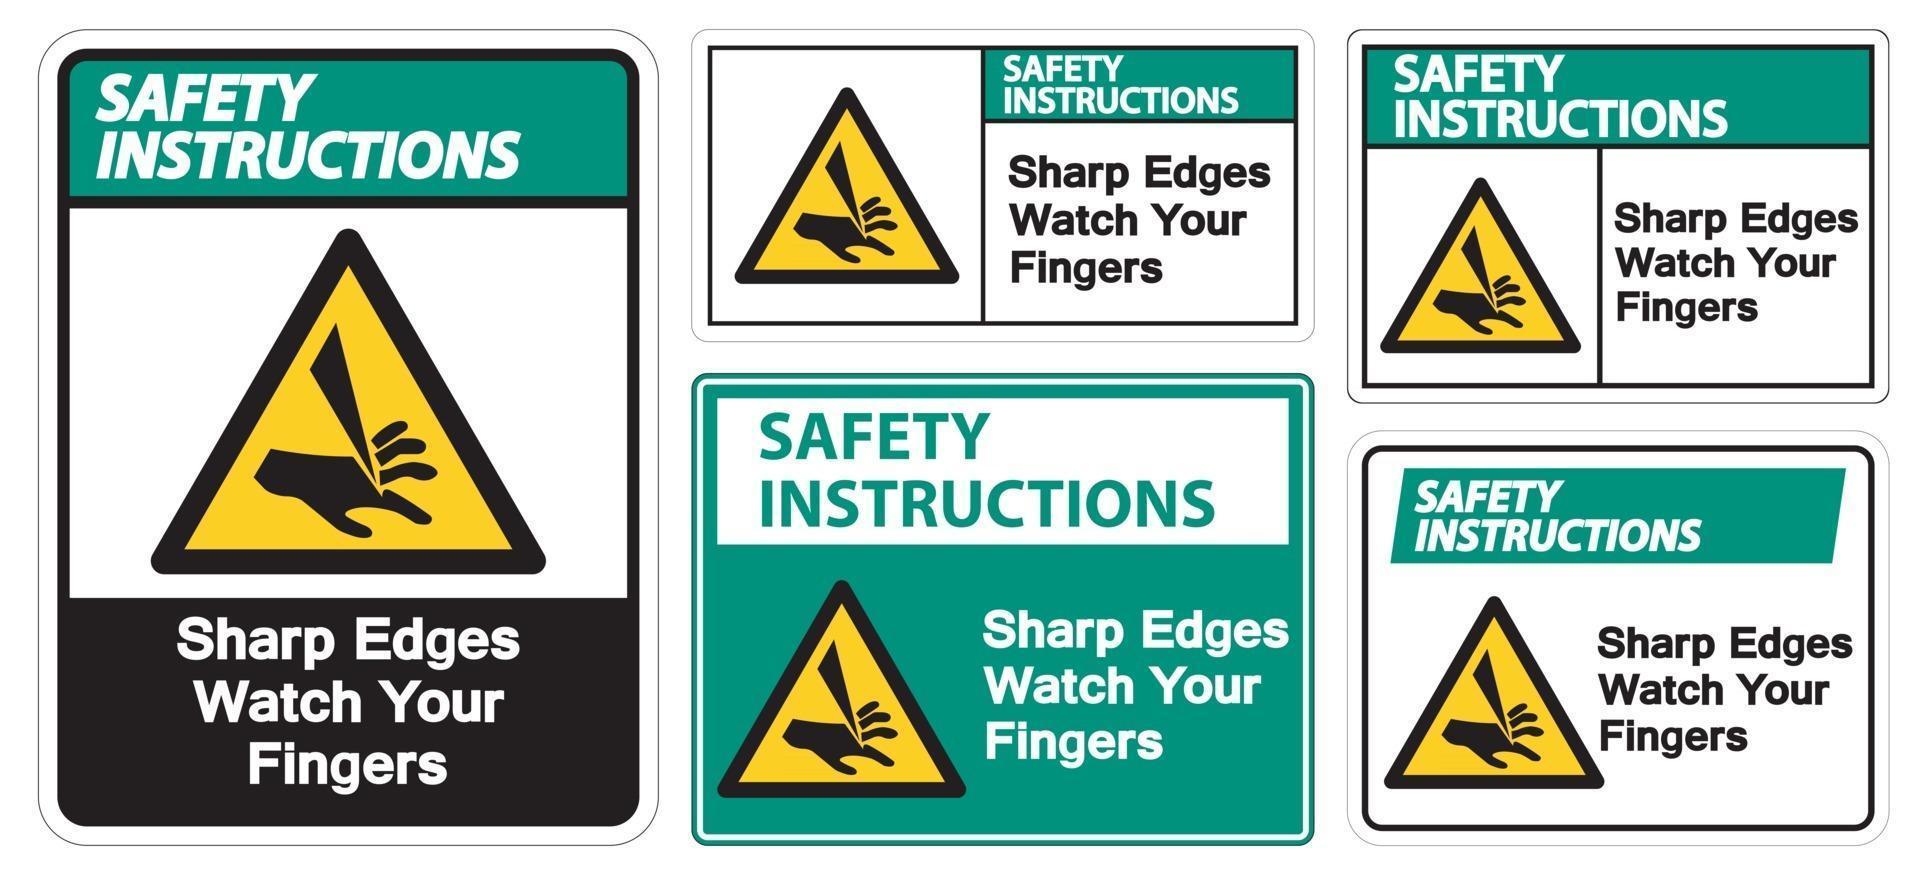 instrucciones de seguridad bordes afilados mire sus dedos símbolo signo aislar sobre fondo blanco, ilustración vectorial eps.10 vector